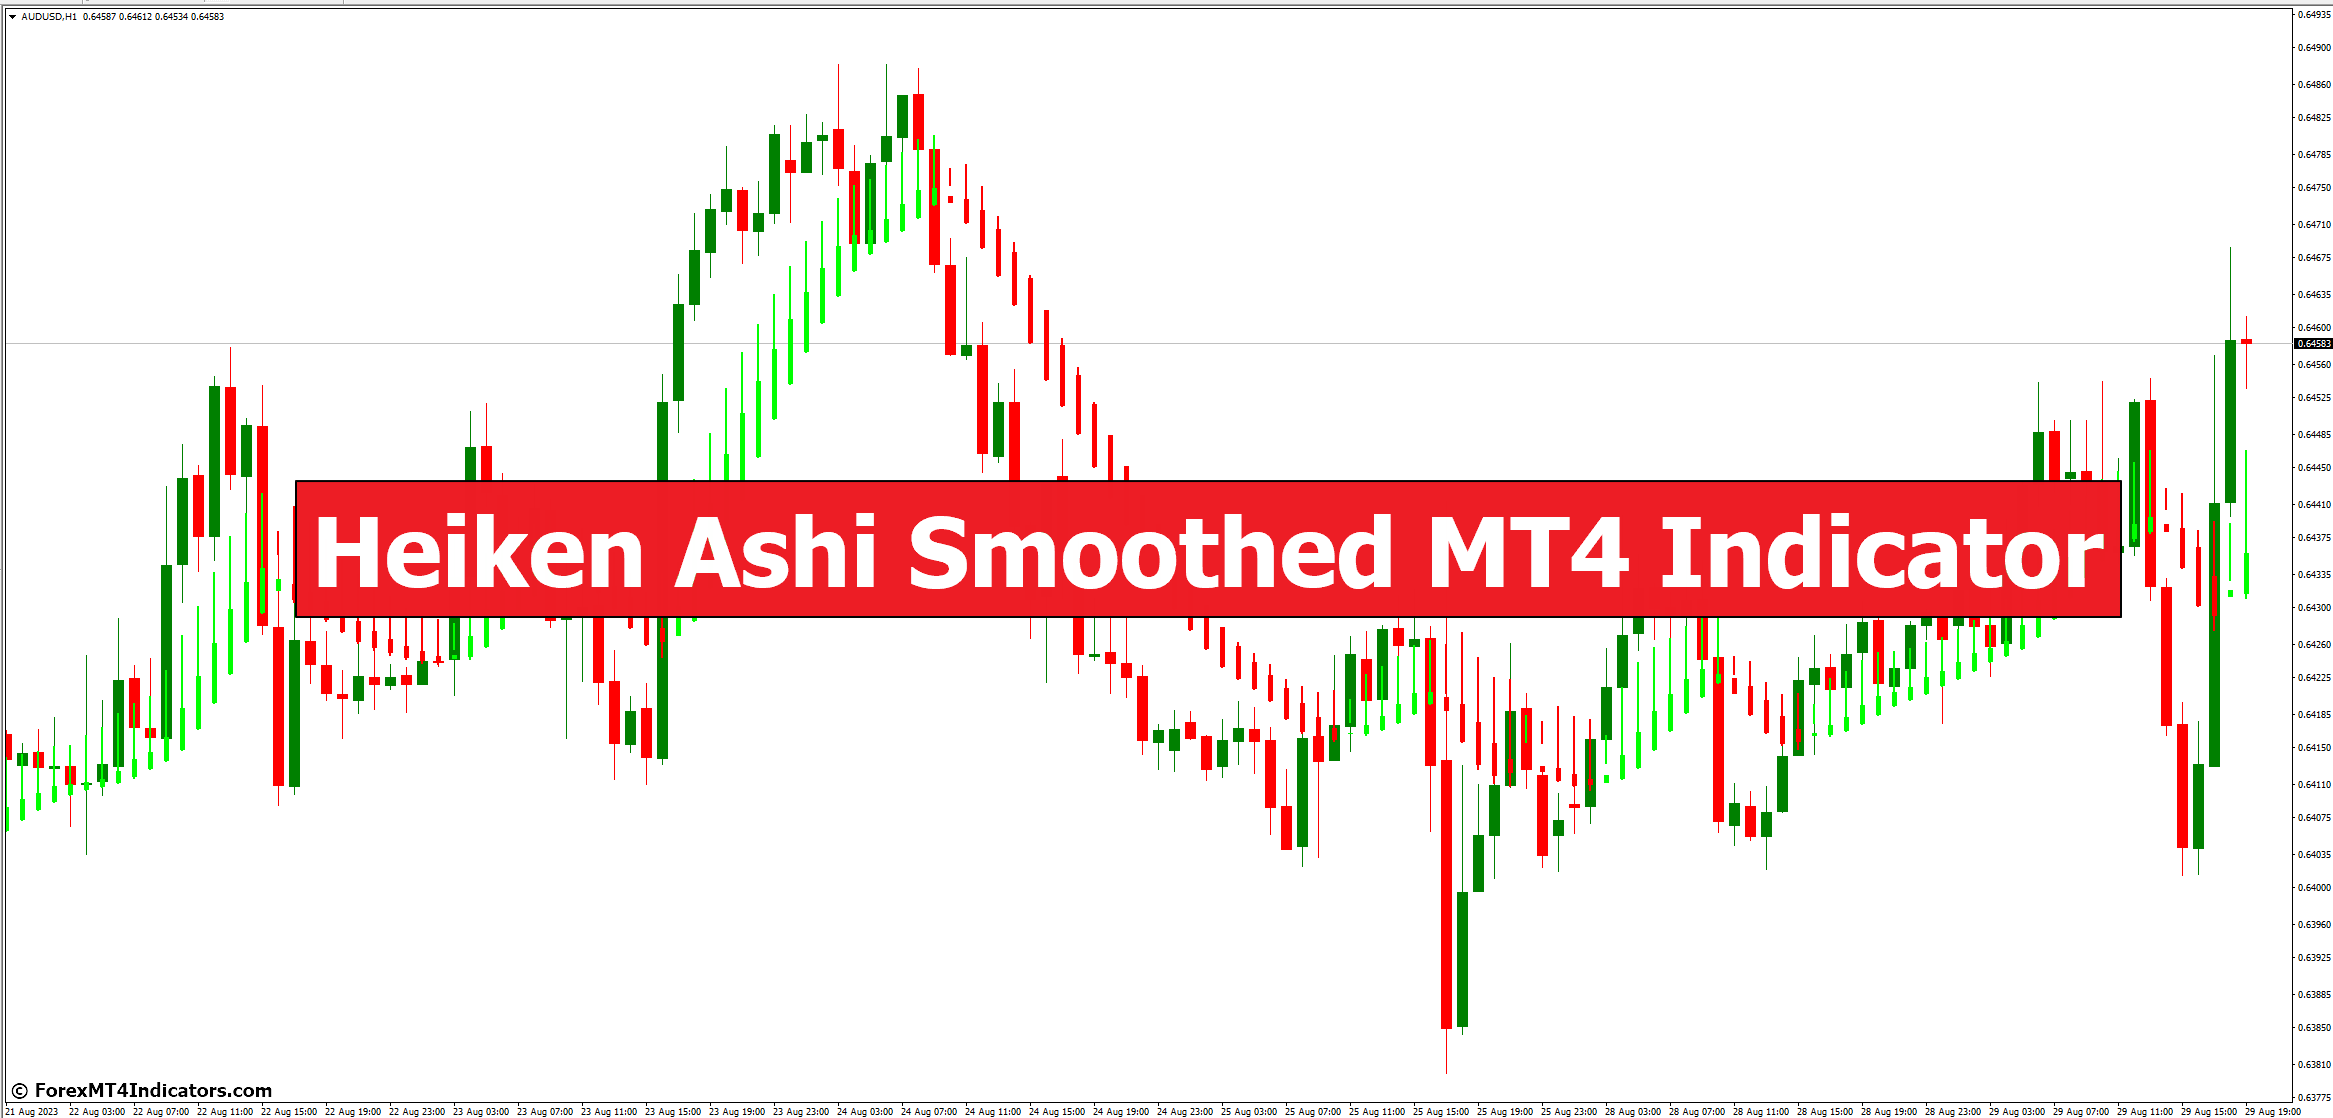 Heiken Ashi Smoothed MT4 Indicator